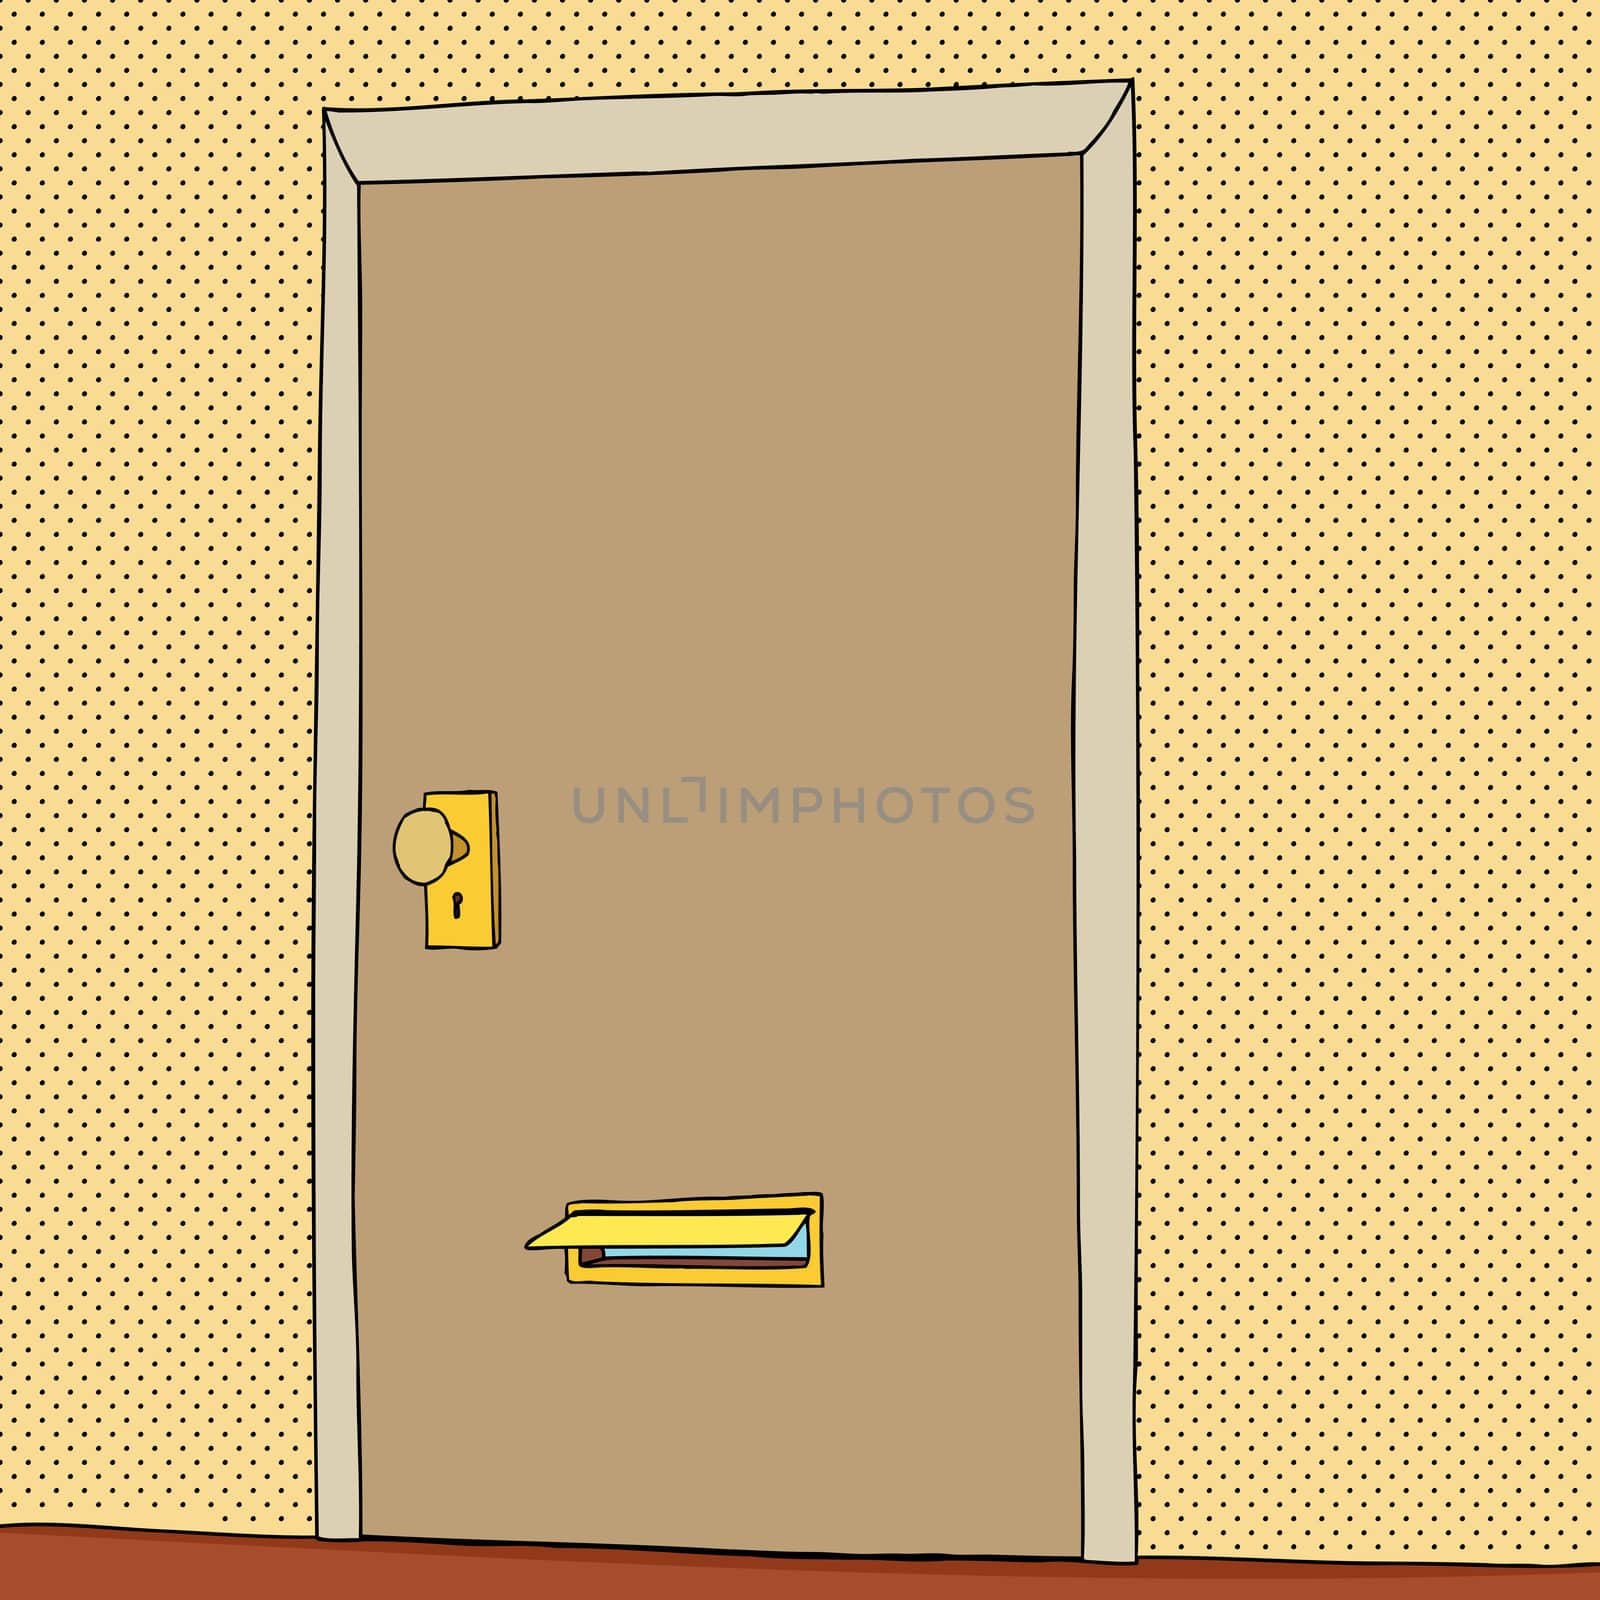 Cartoon of open mail slot in closed door